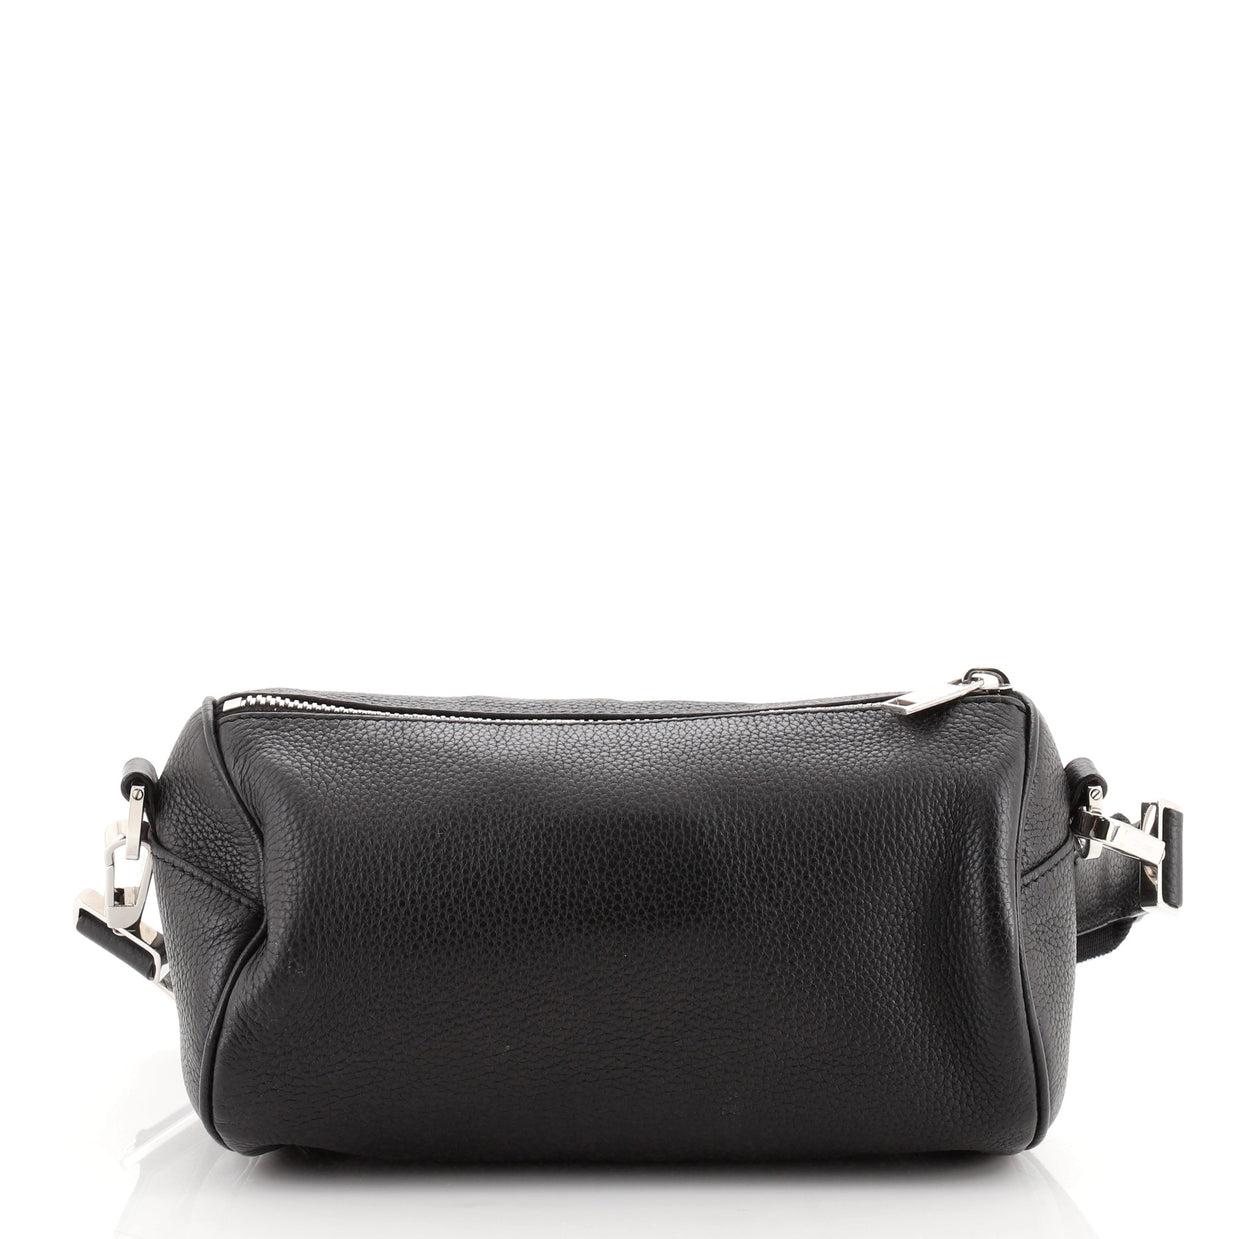 Christian Dior Roller Messenger Bag Leather Black 709541